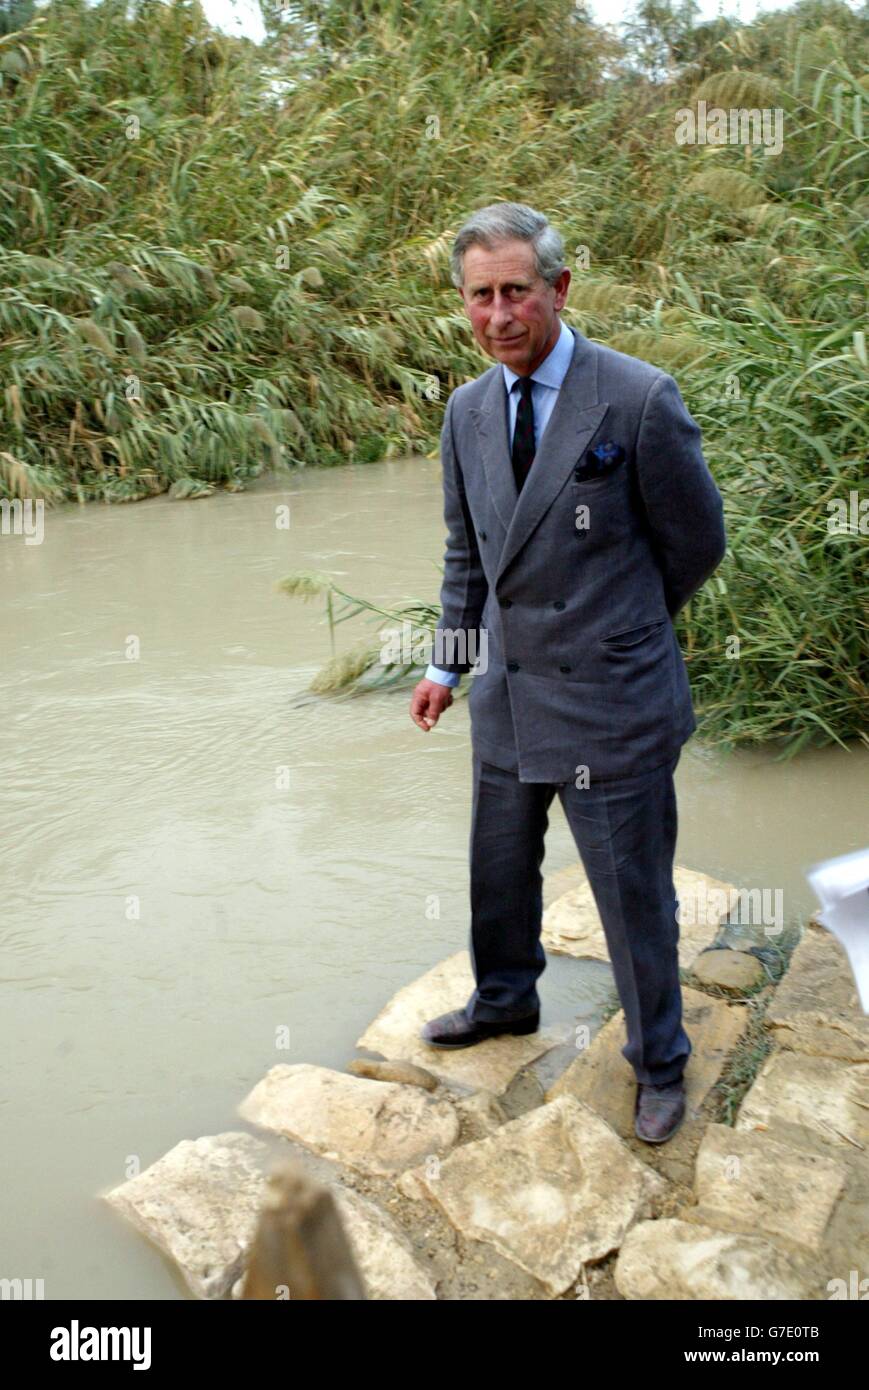 Il Principe di Galles visita un sito di battesimo sul lato est del fiume Giordano, durante una visita ufficiale in Giordania sull'ultima tappa del suo tour straniero che lo ha già portato in Turchia e in Italia. Foto Stock